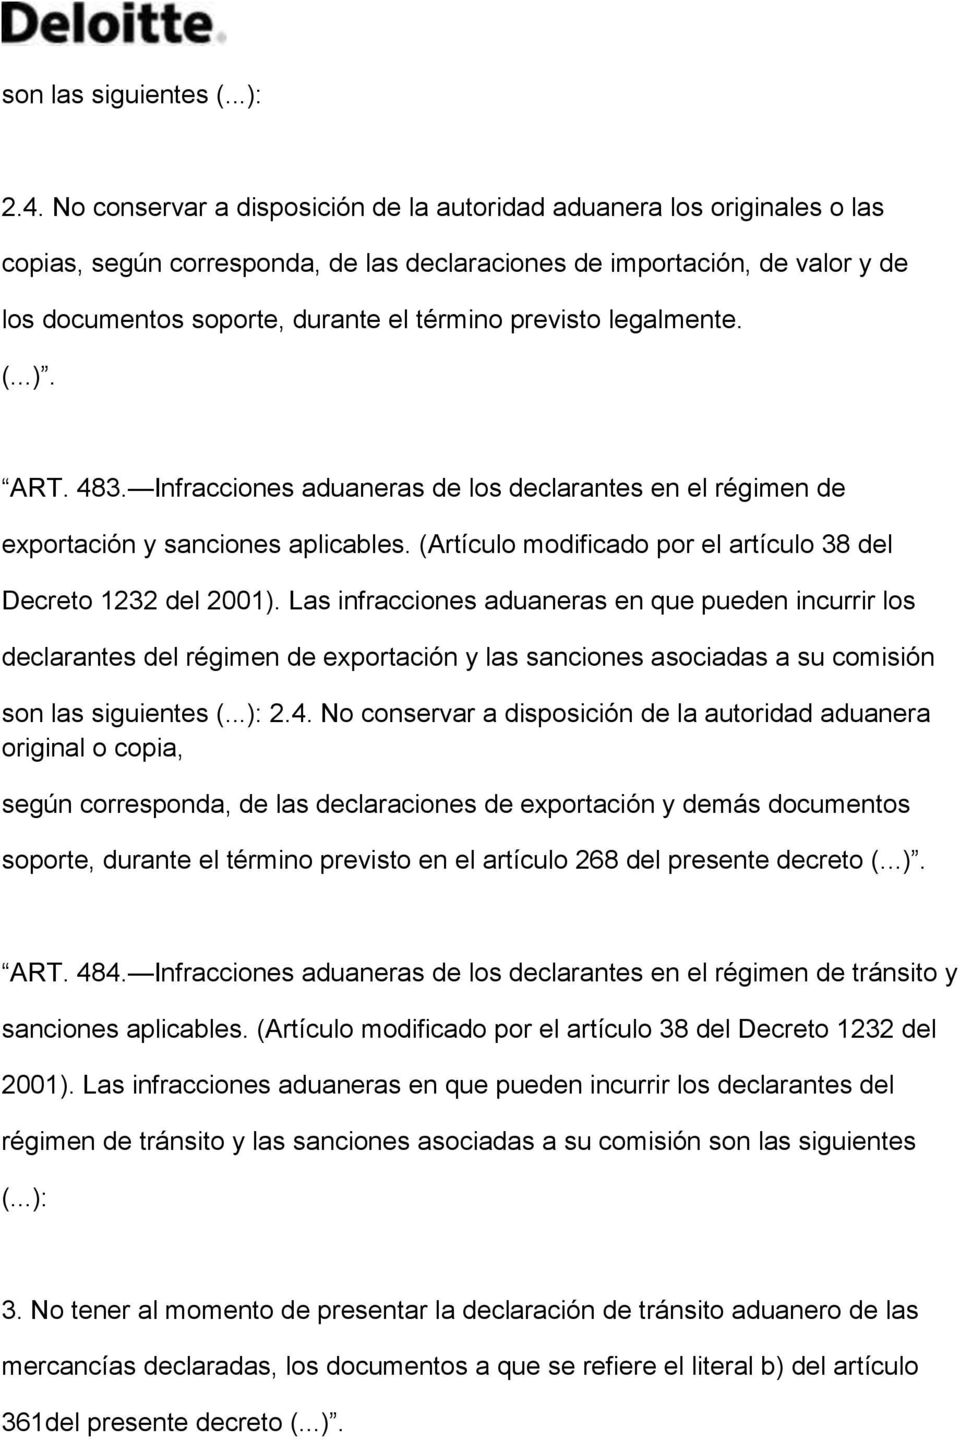 previsto legalmente. (...). ART. 483. Infracciones aduaneras de los declarantes en el régimen de exportación y sanciones aplicables. (Artículo modificado por el artículo 38 del Decreto 1232 del 2001).